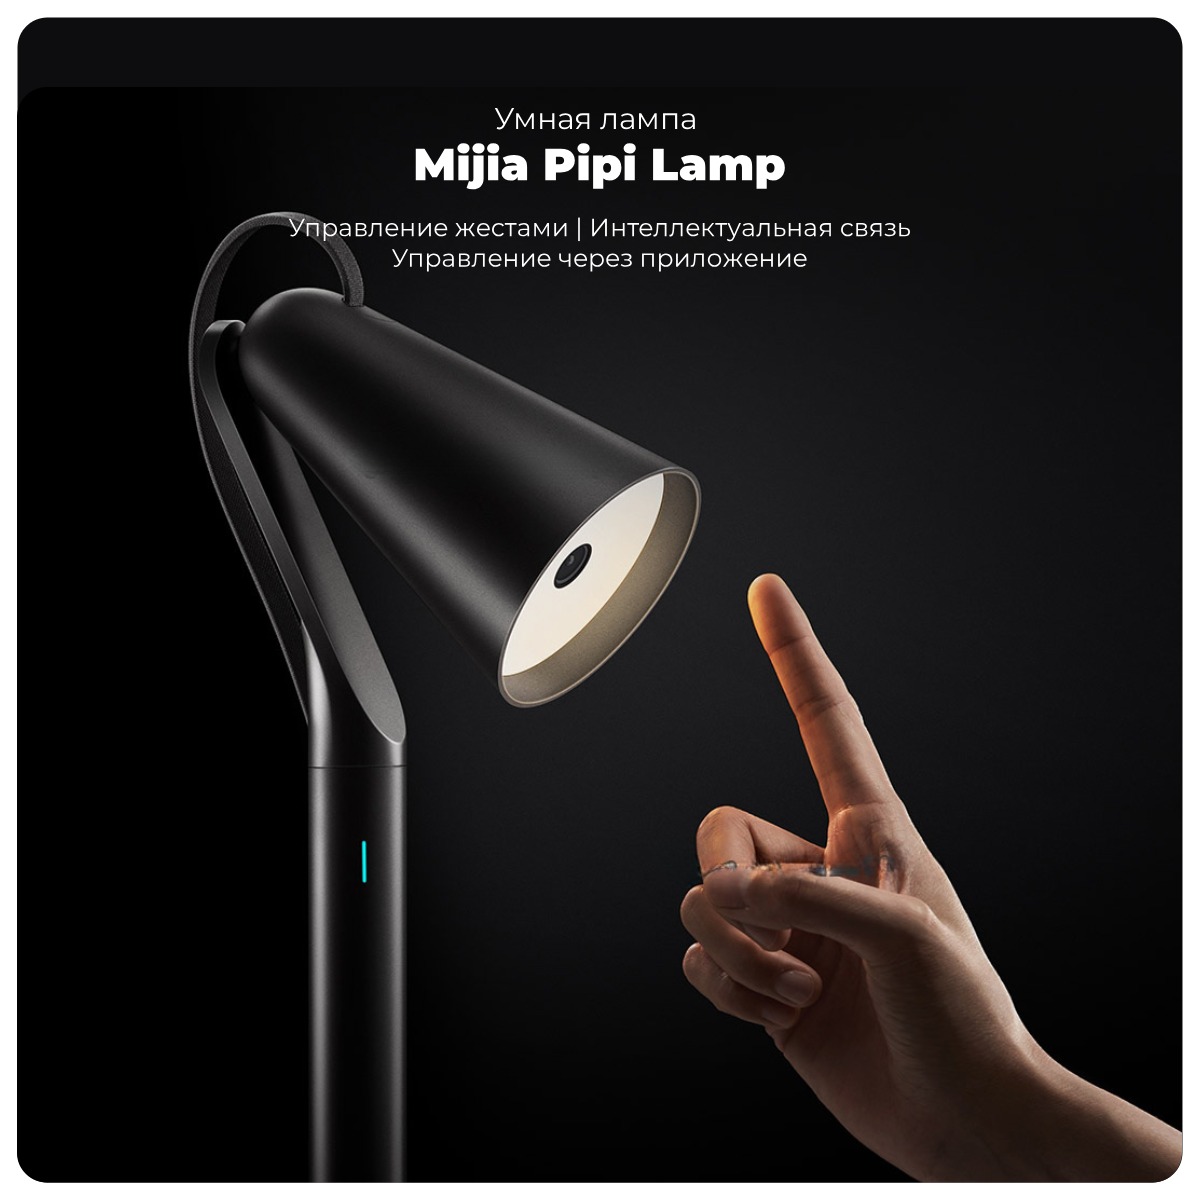 Mijia-Pipi-Lamp-MJPPD01ZM-01